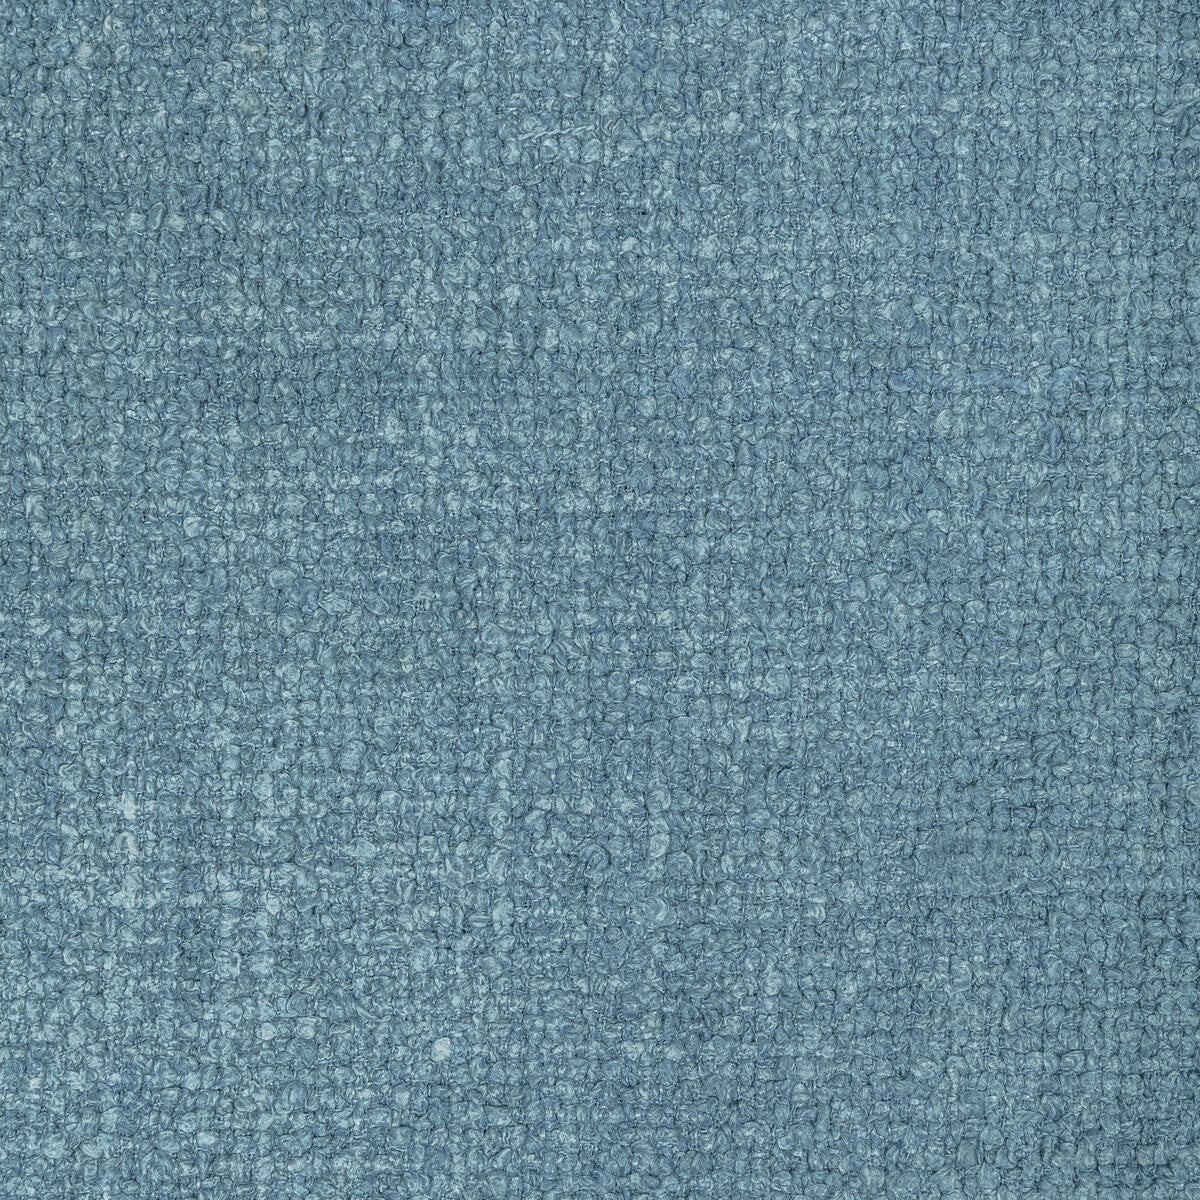 Kravet Basics fabric in 36017-505 color - pattern 36017.505.0 - by Kravet Basics